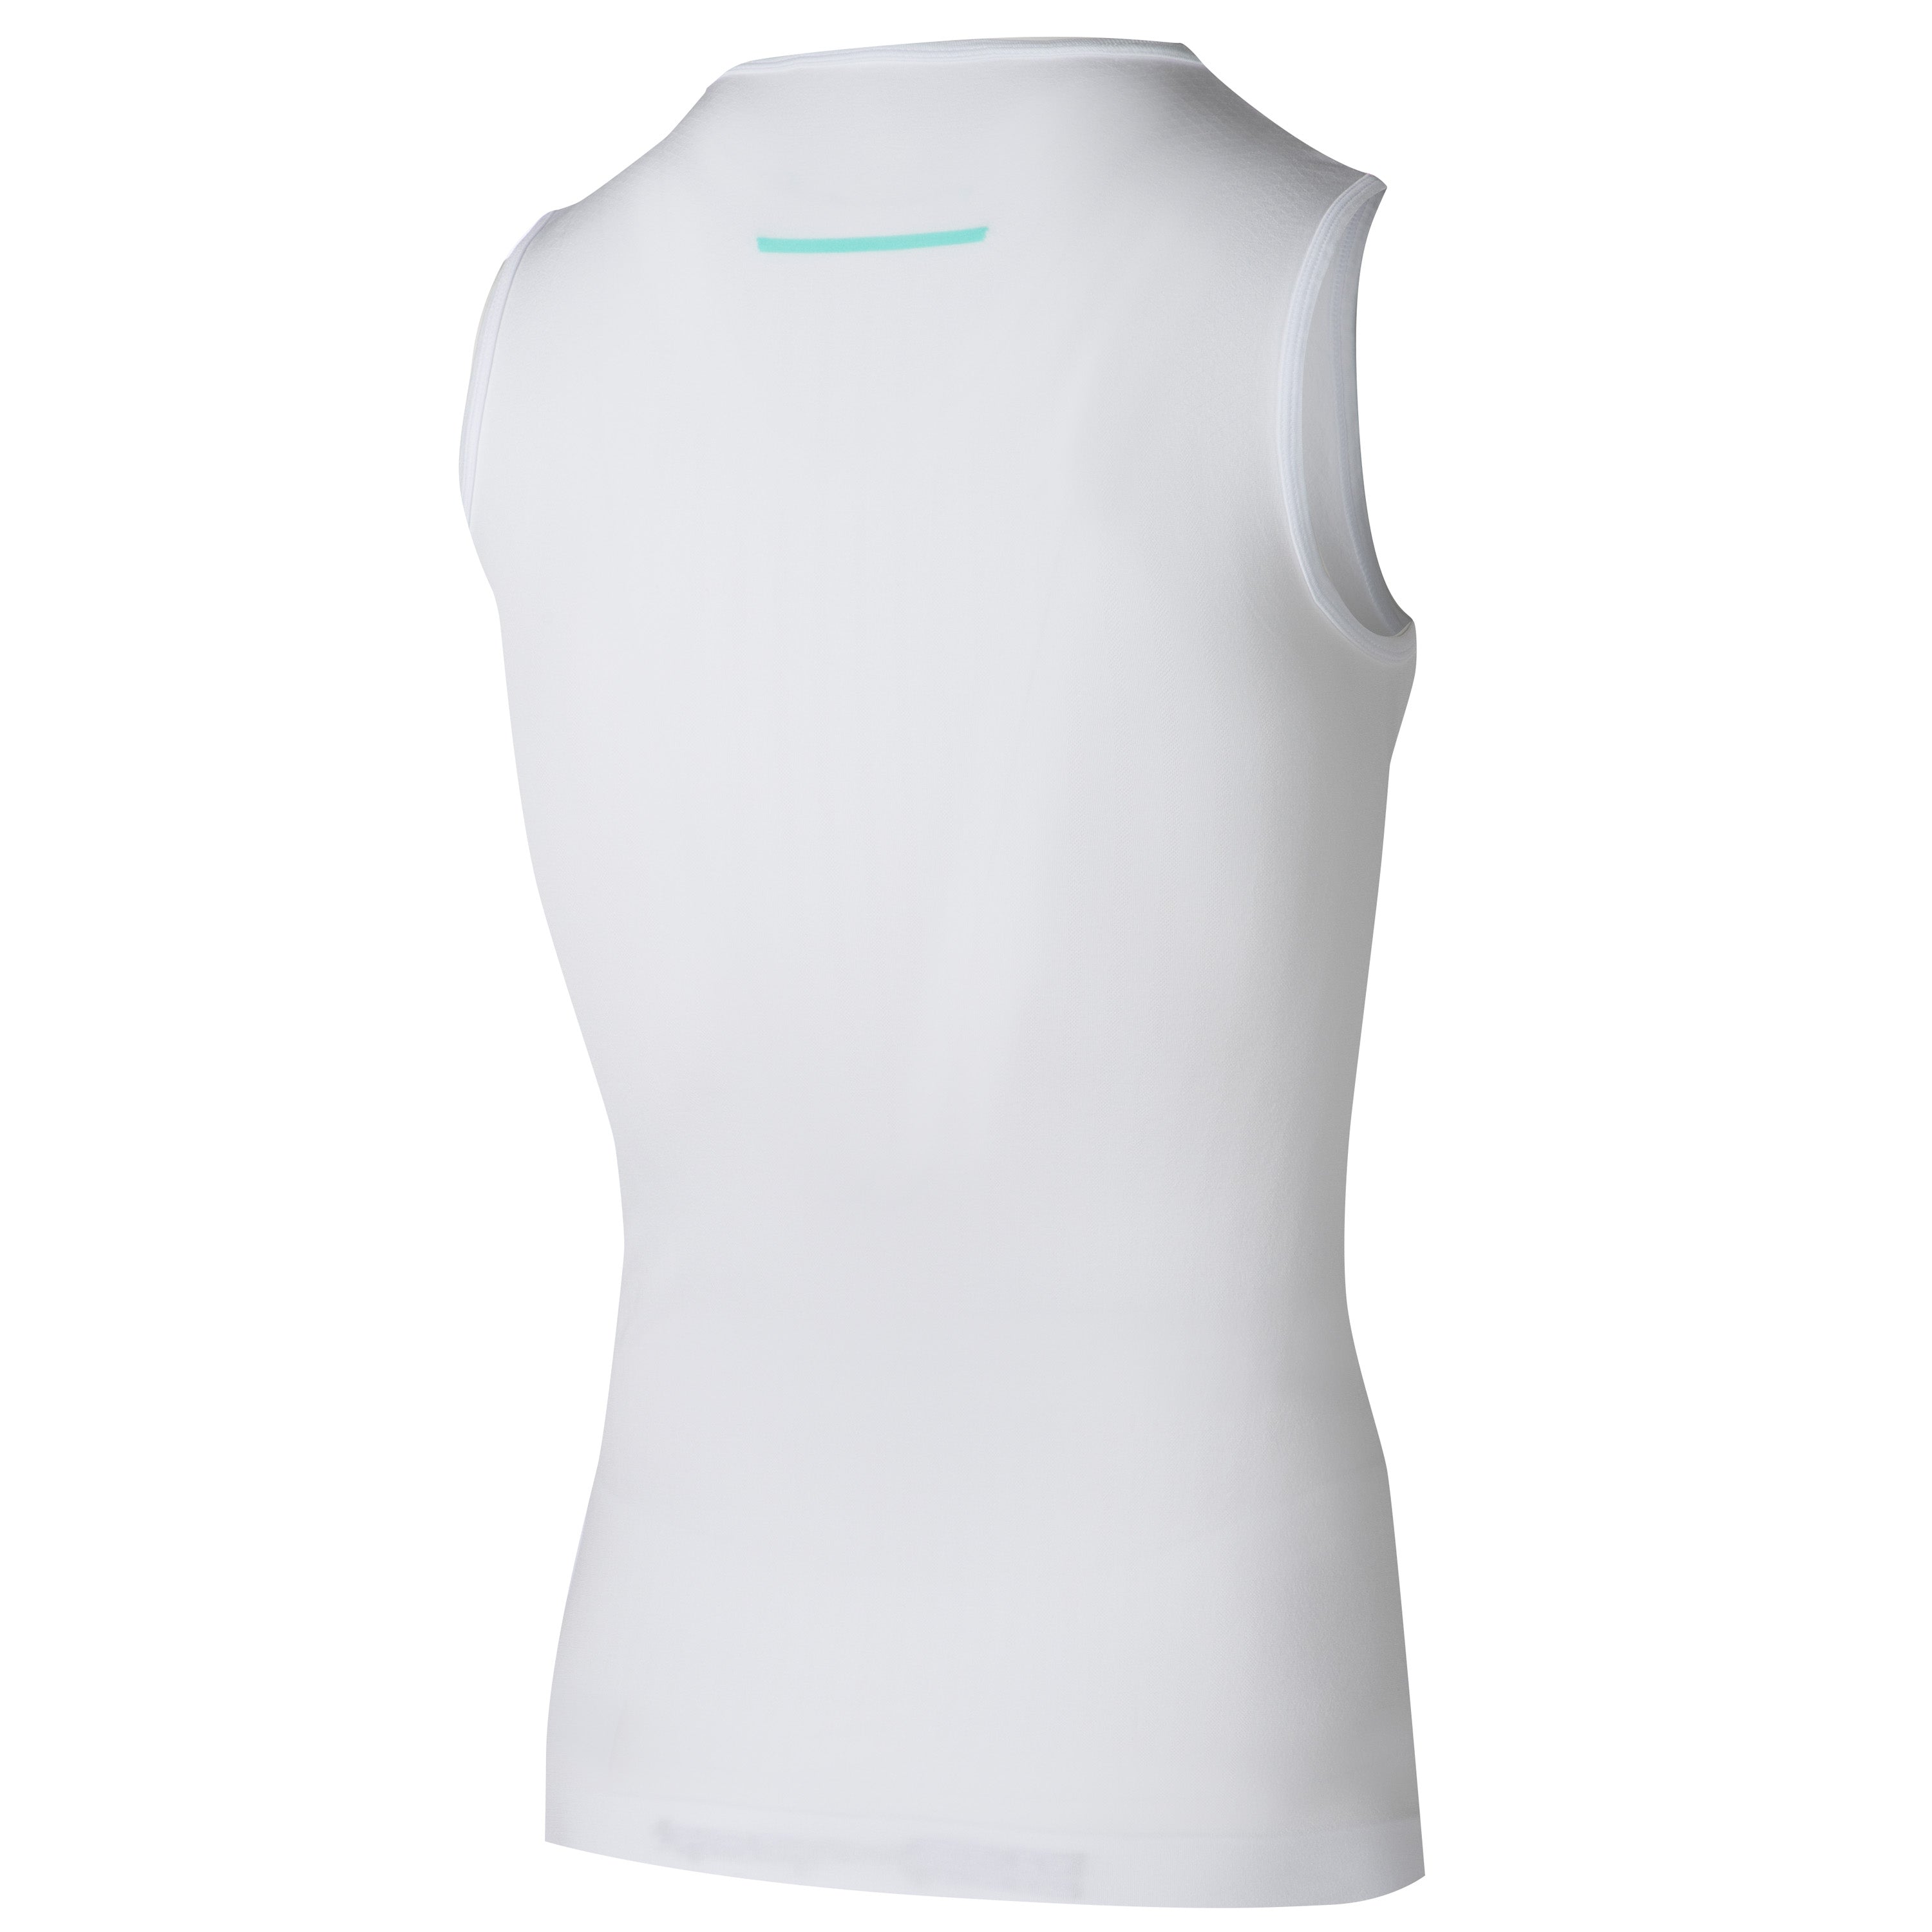 Jëuf Pro sleeveless undershirt - White